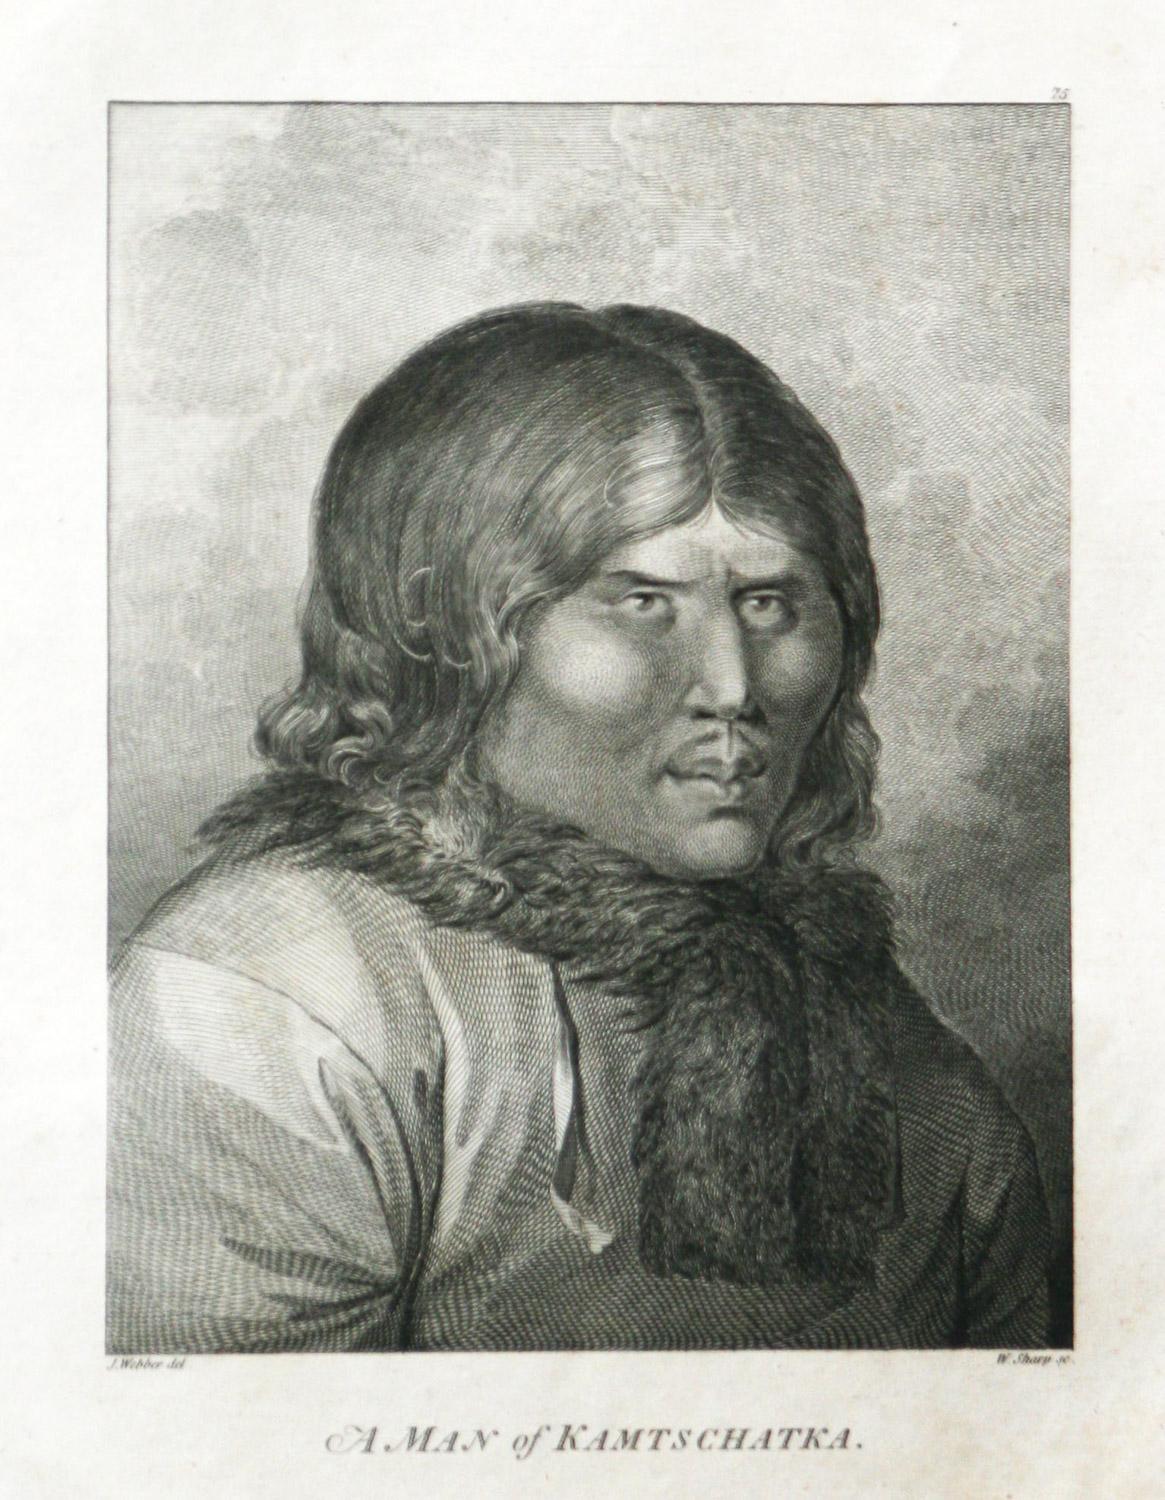 Un homme du Kamtschatka (Russie) est tiré de la première édition de l'atlas de 1784 accompagnant le CAP. James Cook and King ; troisième et dernier voyage du capitaine James Cook. John Webber (1752-1793) était l'artiste officiel du troisième voyage